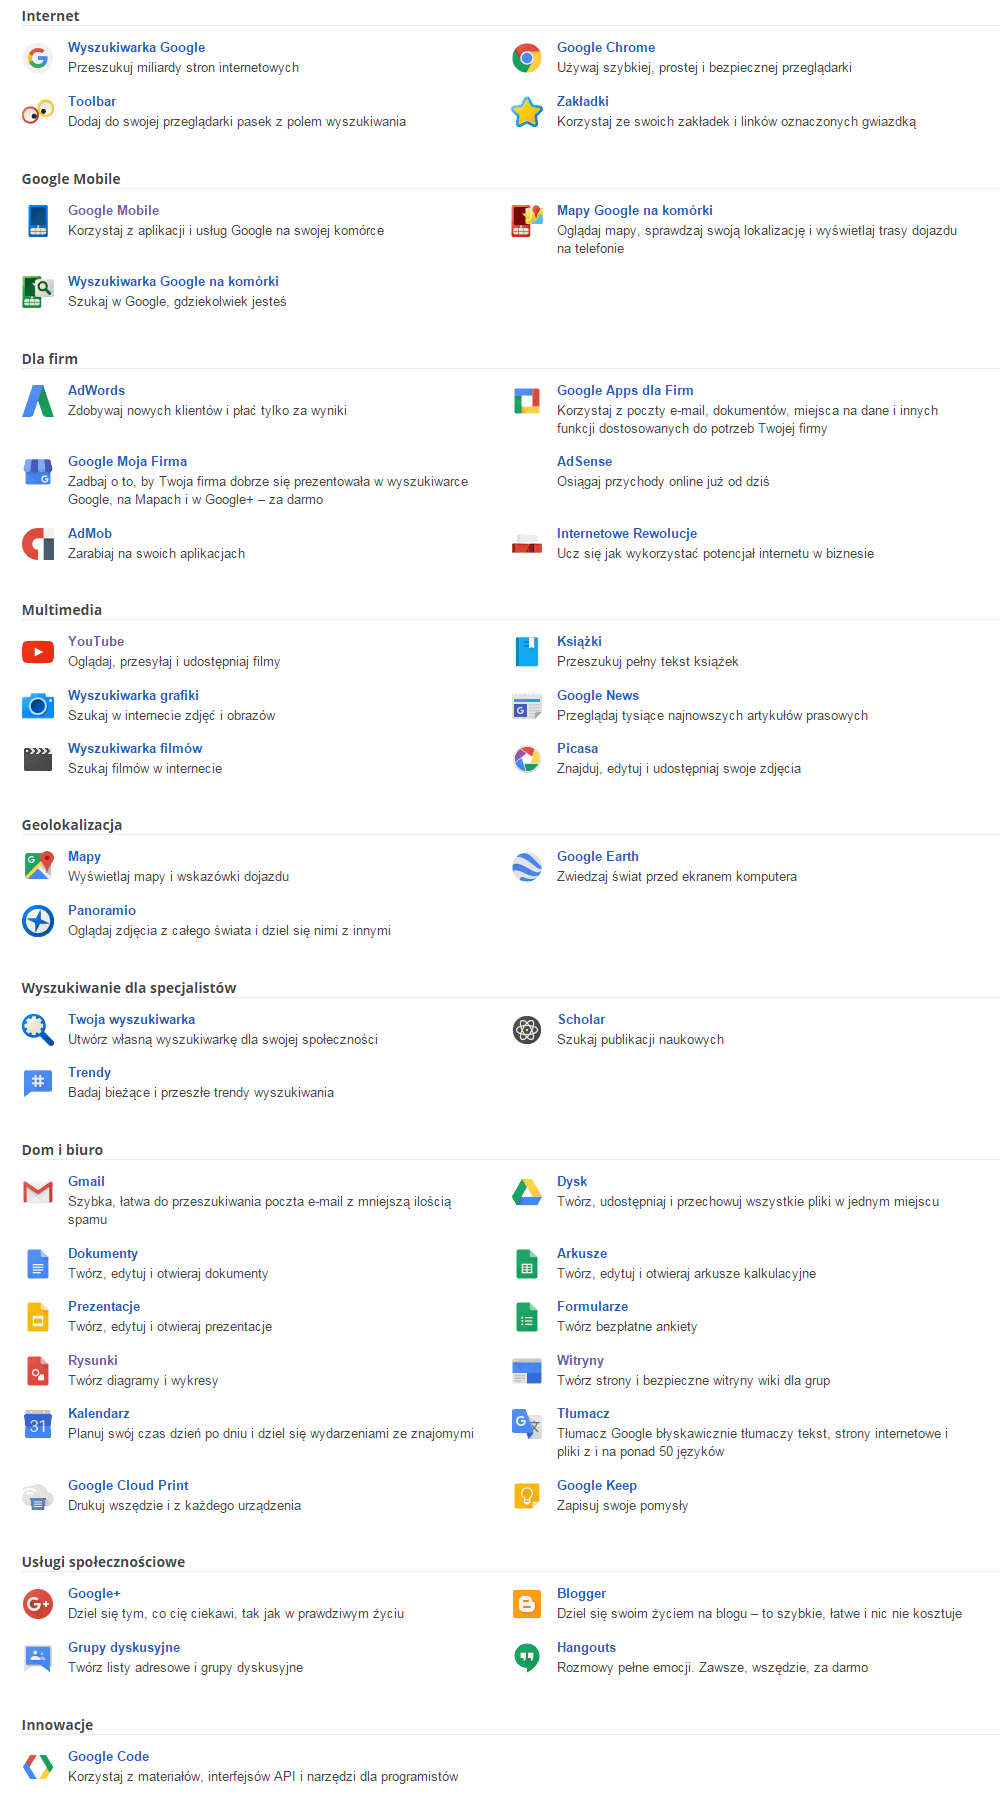 Wszystko o Google Usługi